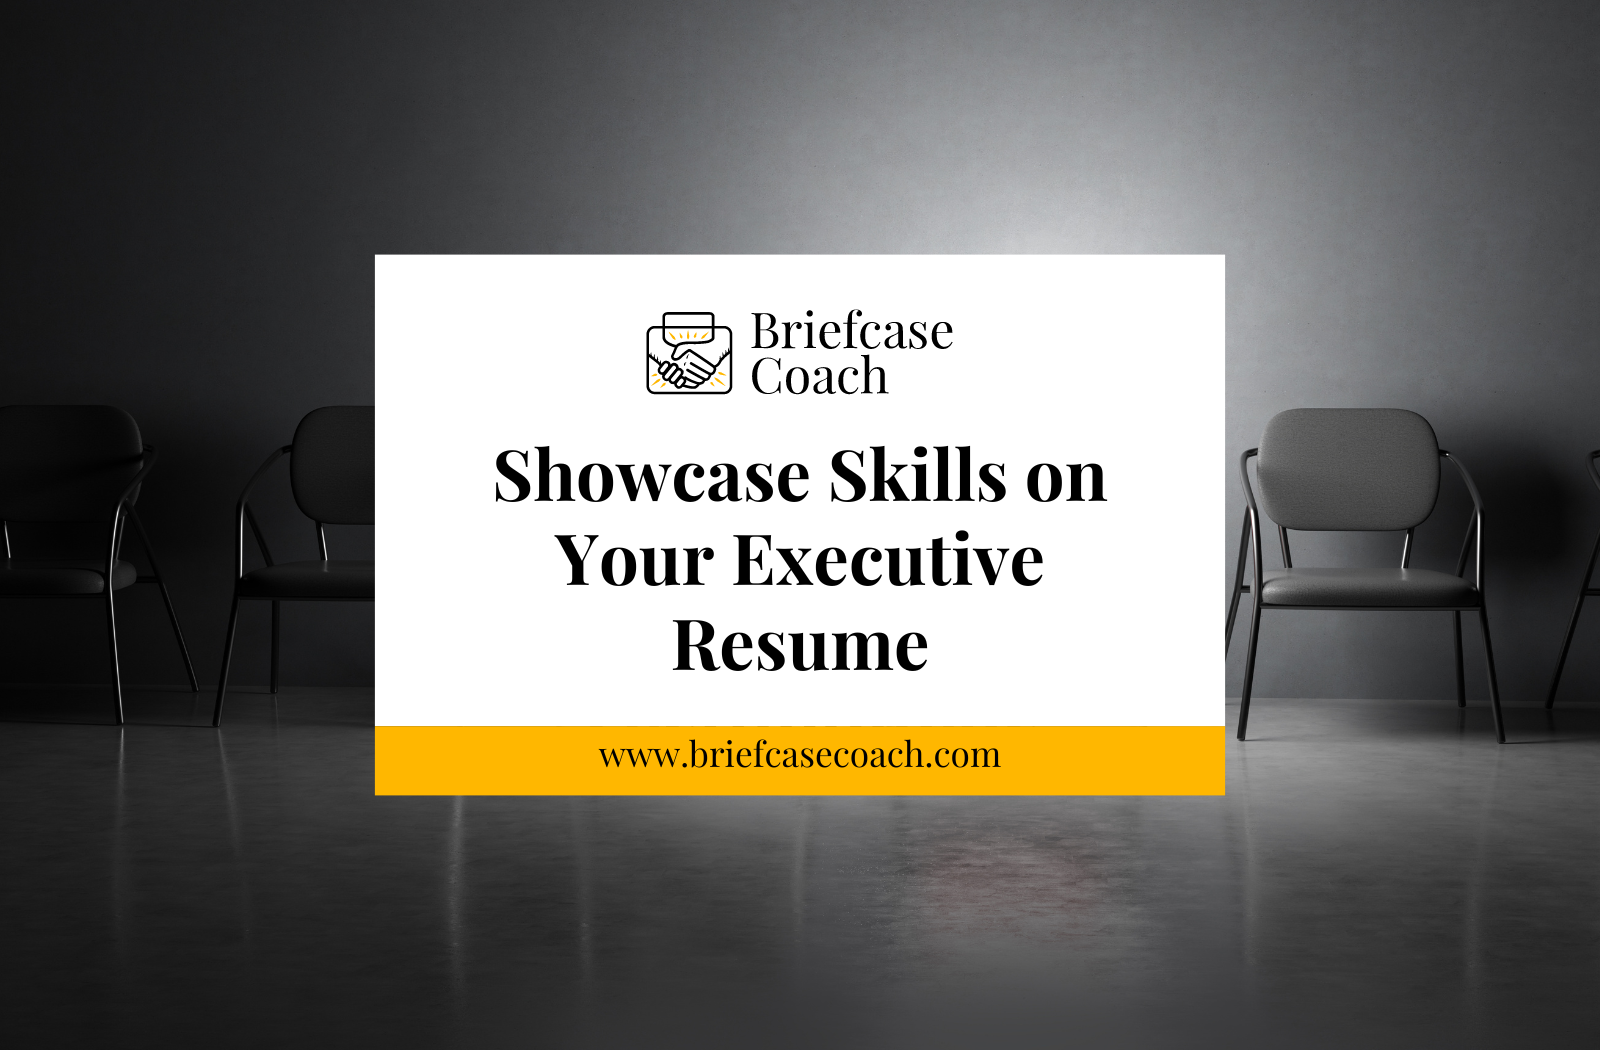 Showcase Skills on Your Executive Resume